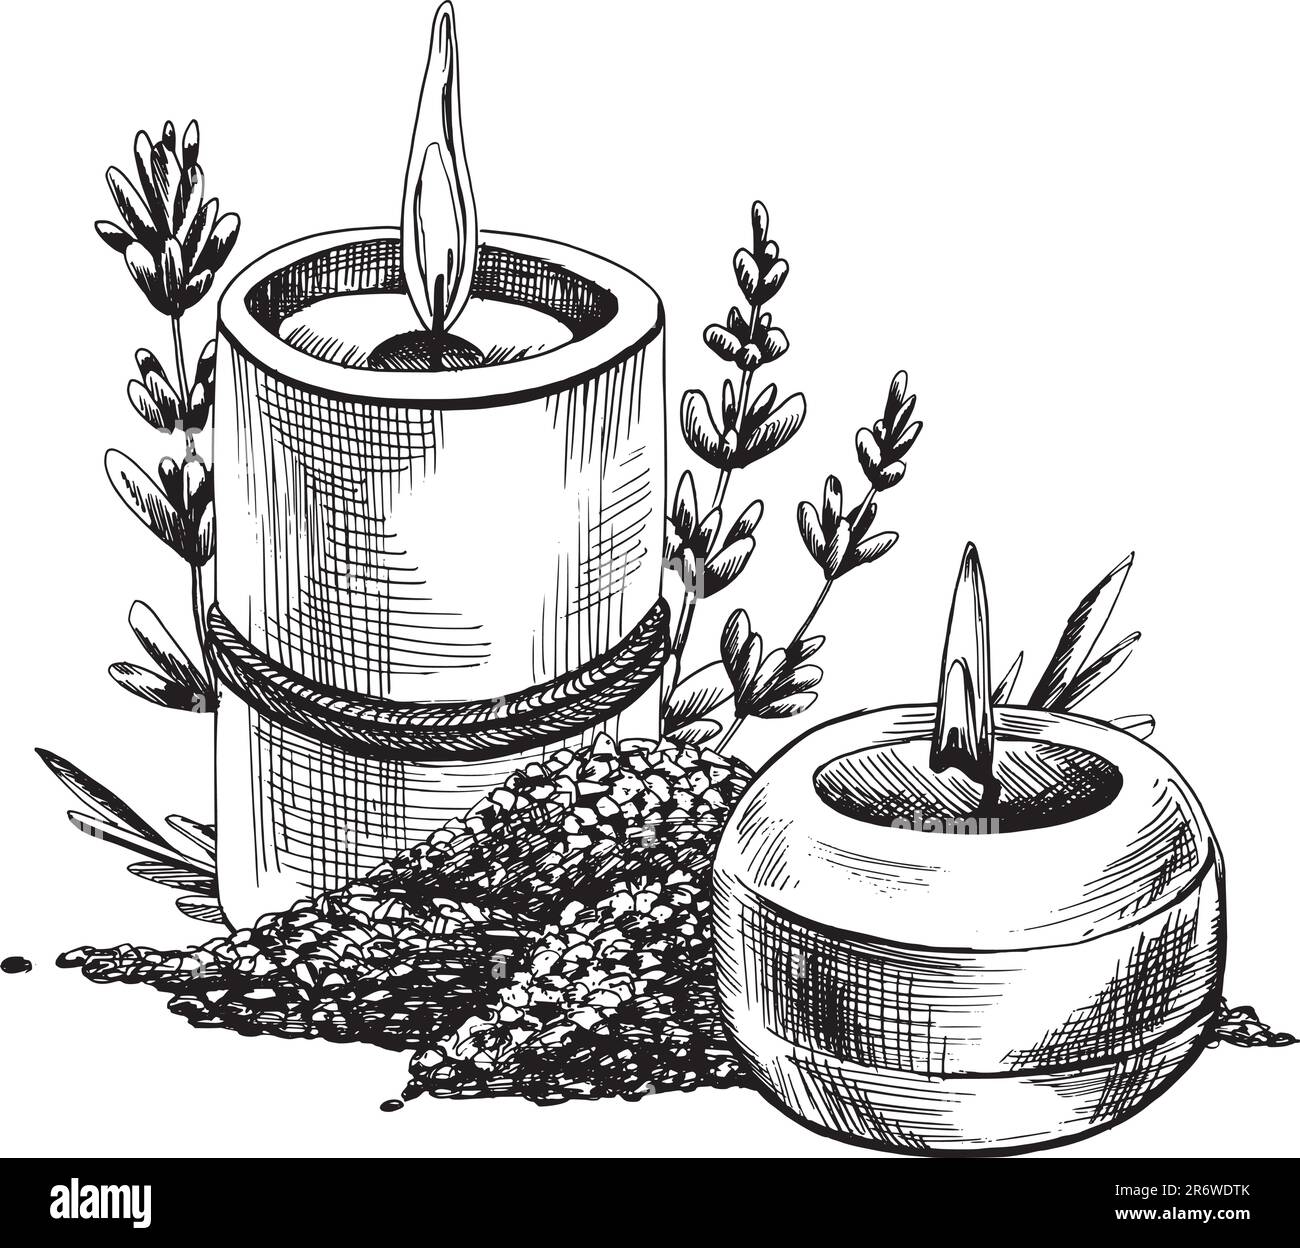 Sale marino e candele con fiori di lavanda. Illustrazione disegnata a mano, vettore grafico EPS. Composizione isolata su sfondo bianco. Illustrazione Vettoriale